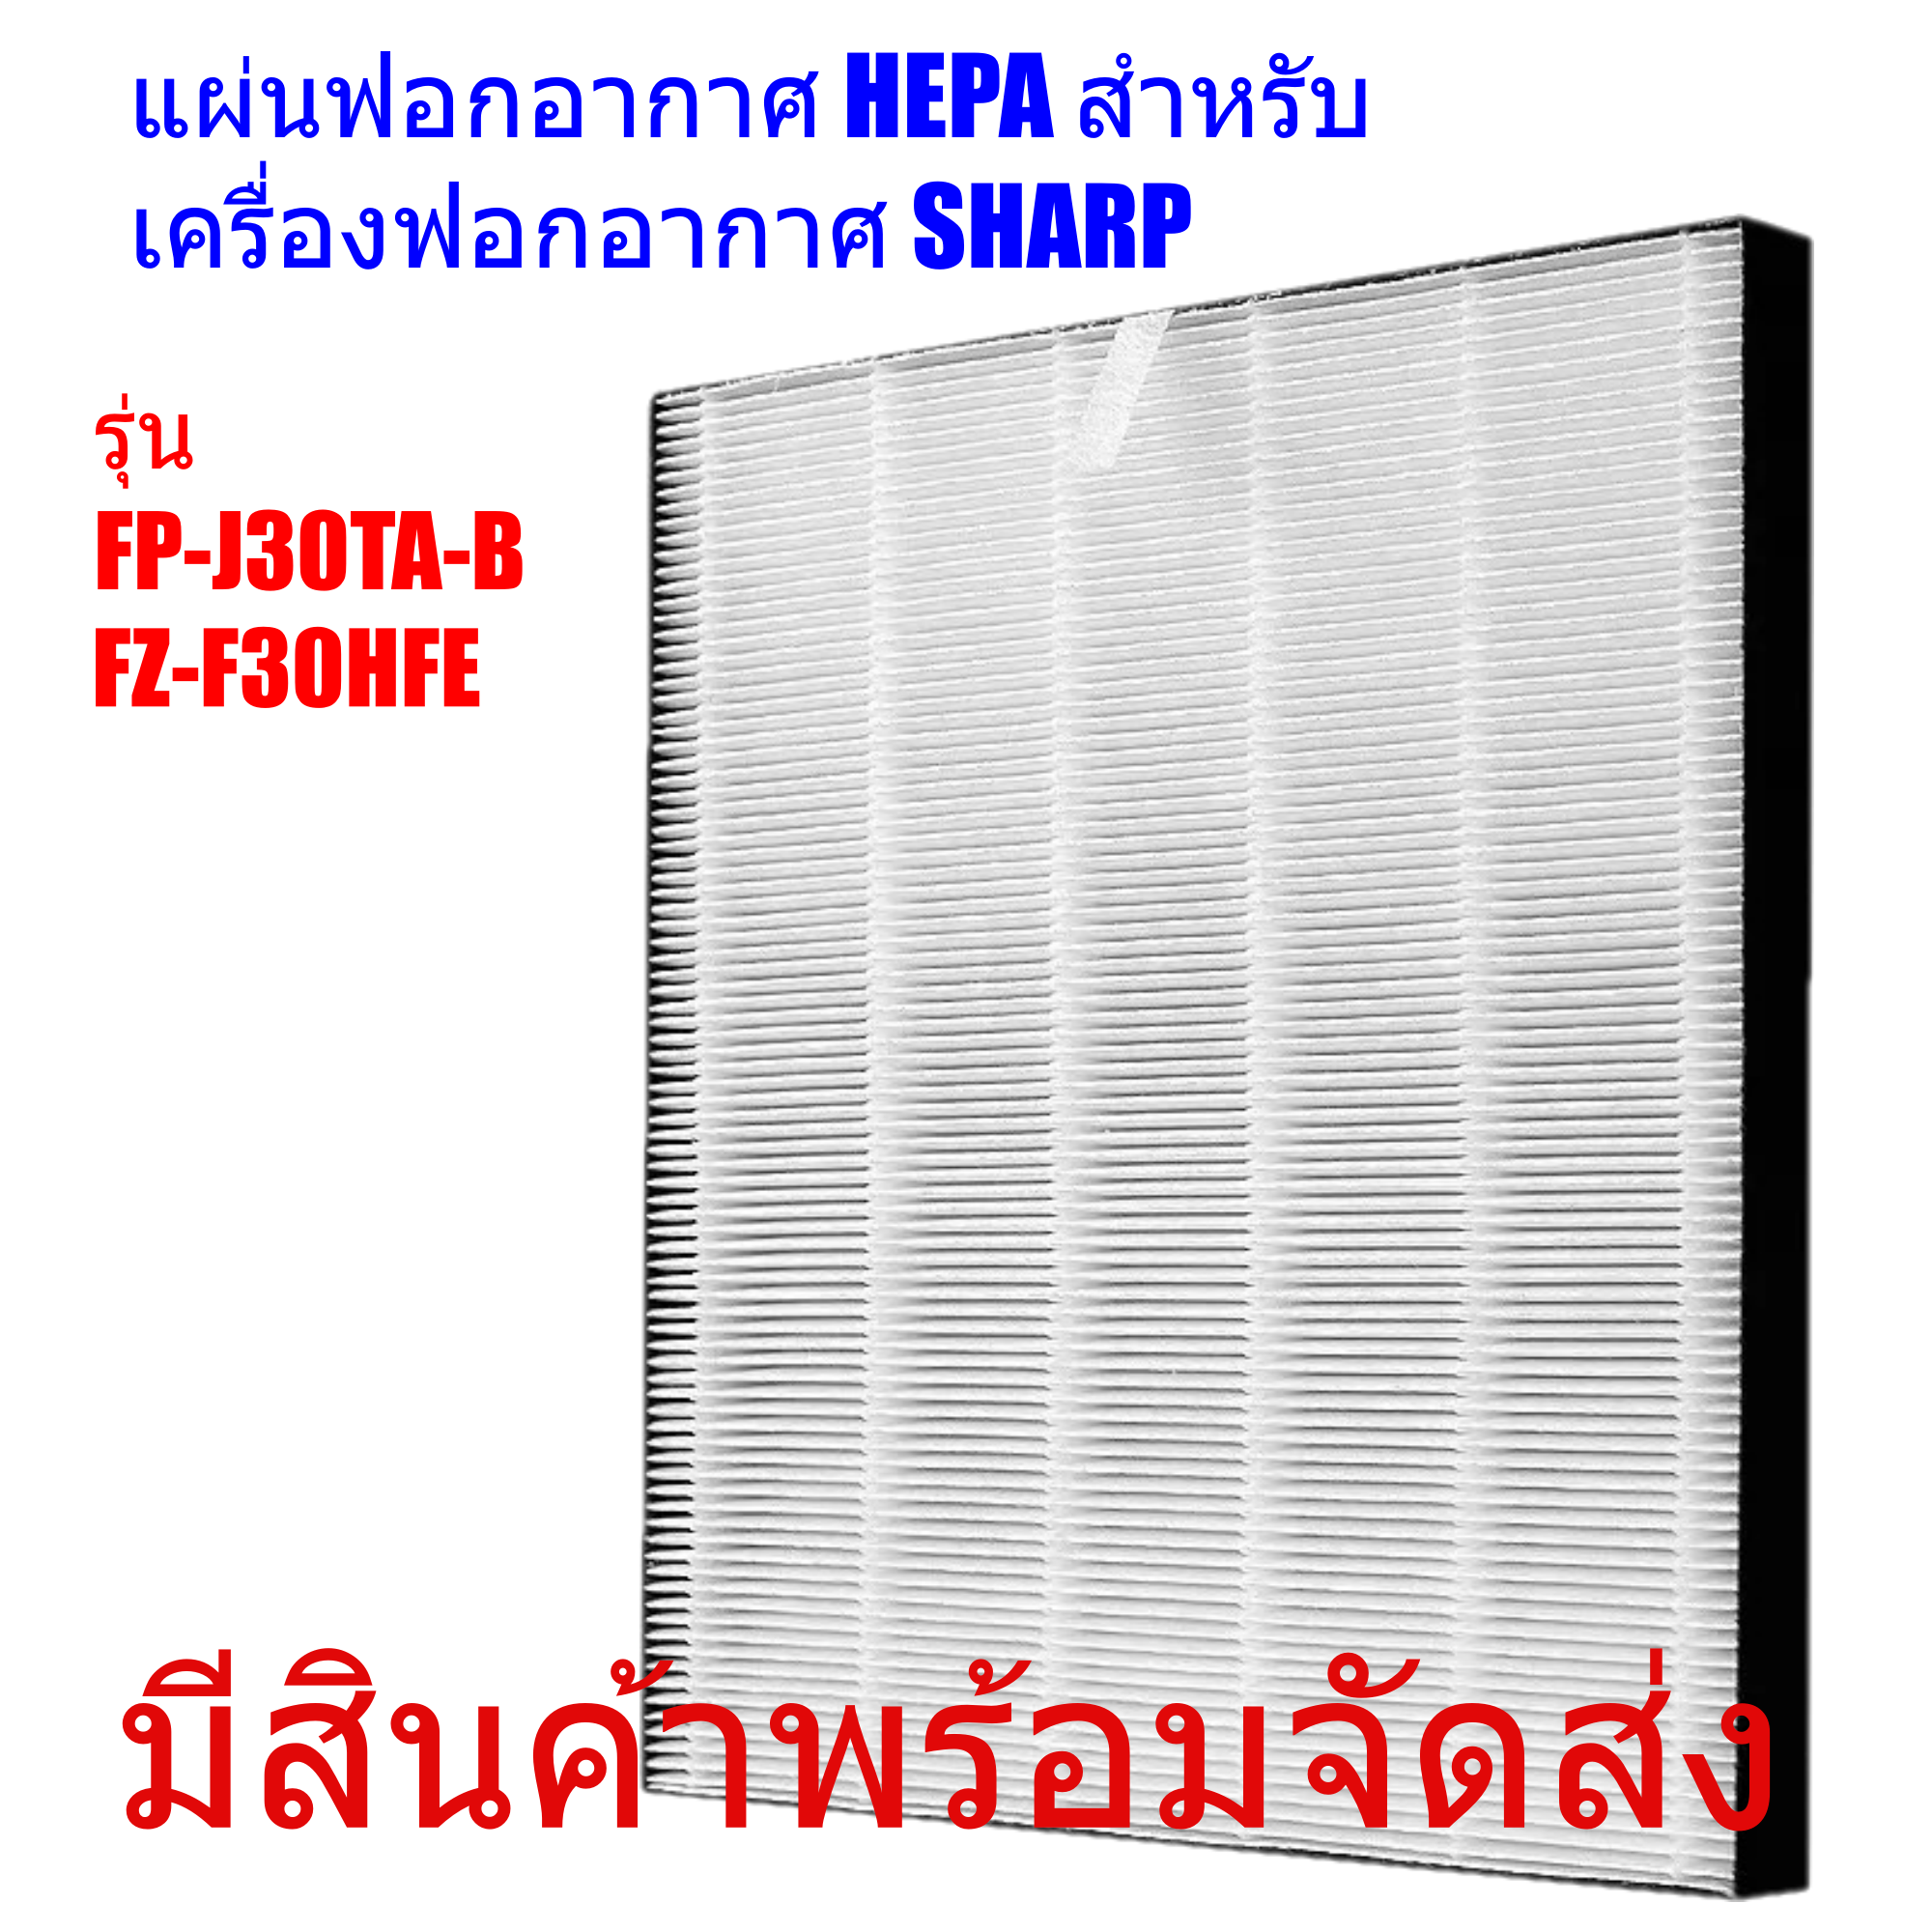 แผ่นกรองอากาศ รุ่นHEPA FZ-F30HFE for SHARP FP-J30TA-B สำหรับเครื่องฟอกอากาศ Sharp Air Purifier HEPA filter PM 2.5 removal 99.97% แผ่นกรอง ใส้กรองอากาศชาร์ป ฟิลเตอร์ สำหรับ Sharp Air purifier Replacement Filter Model FZ-F30HFE AIR FILTER